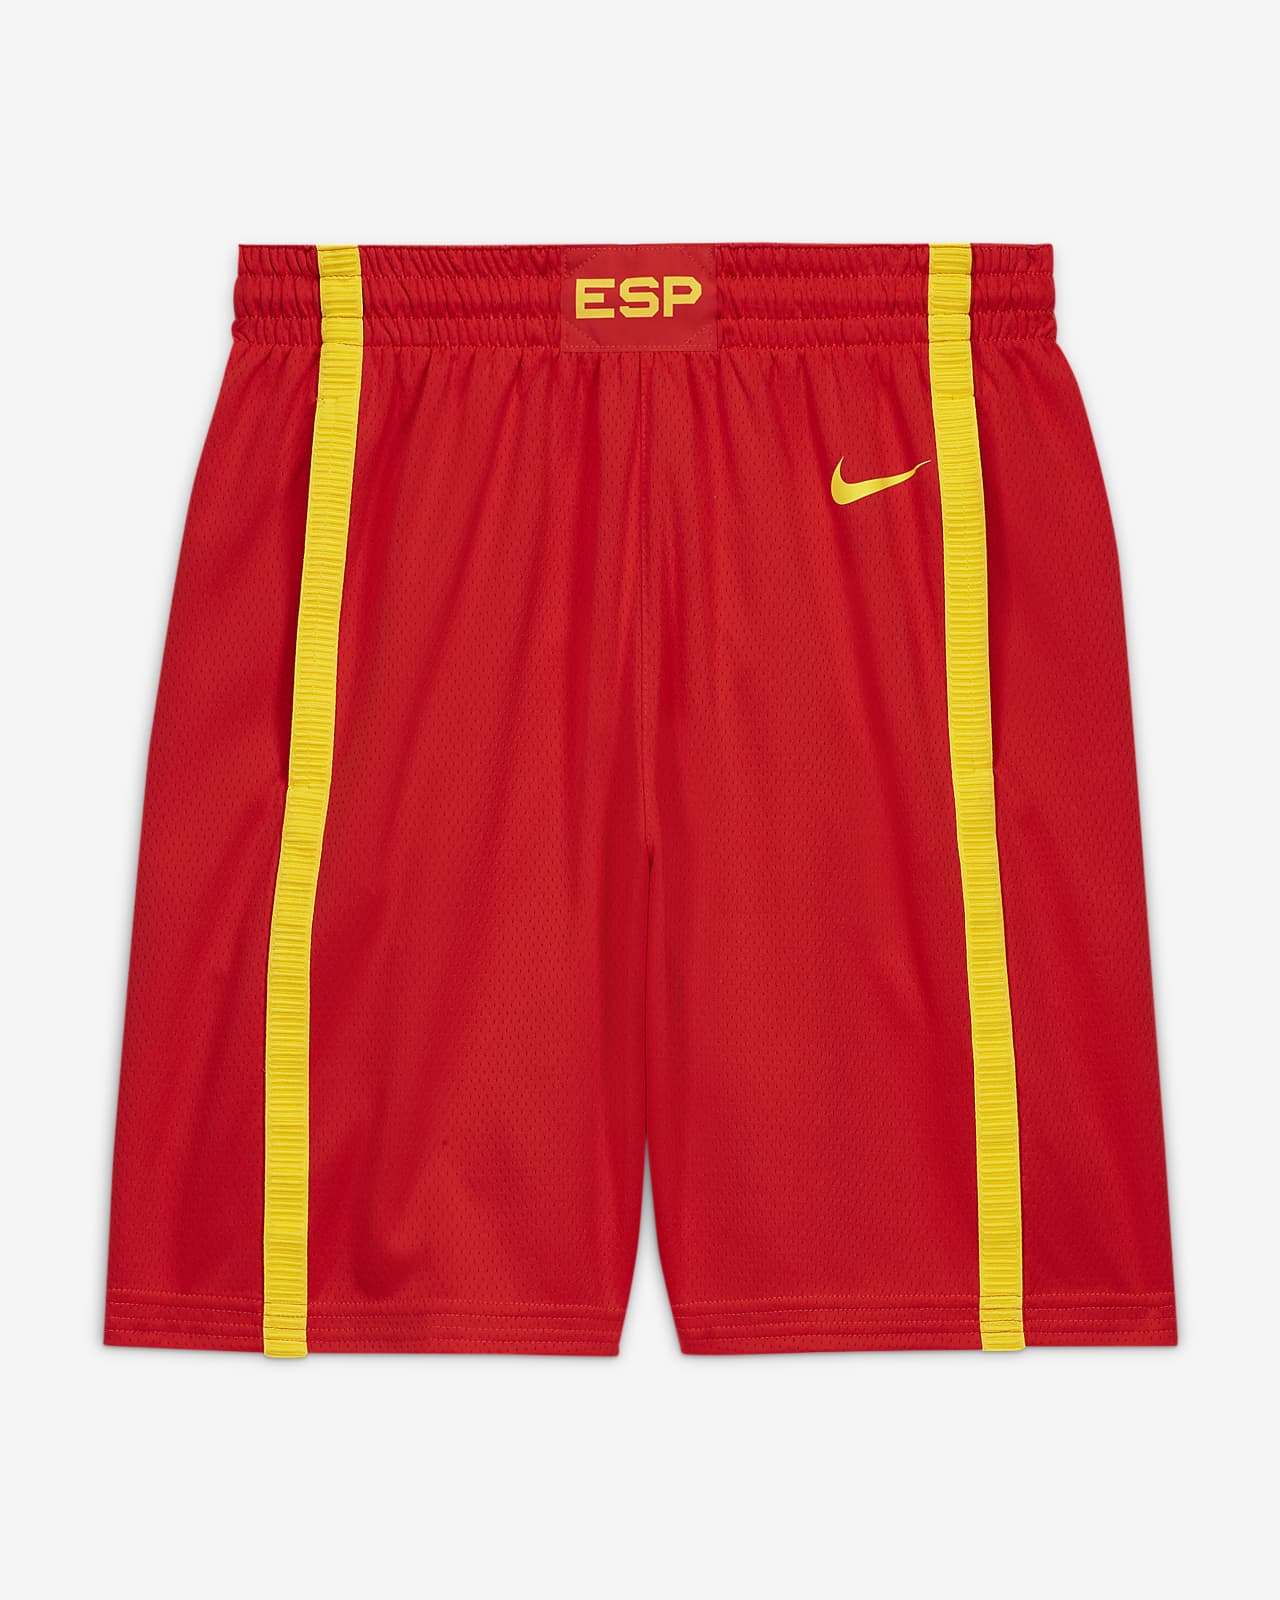 Basketshorts Spain Nike (Road) Limited för män